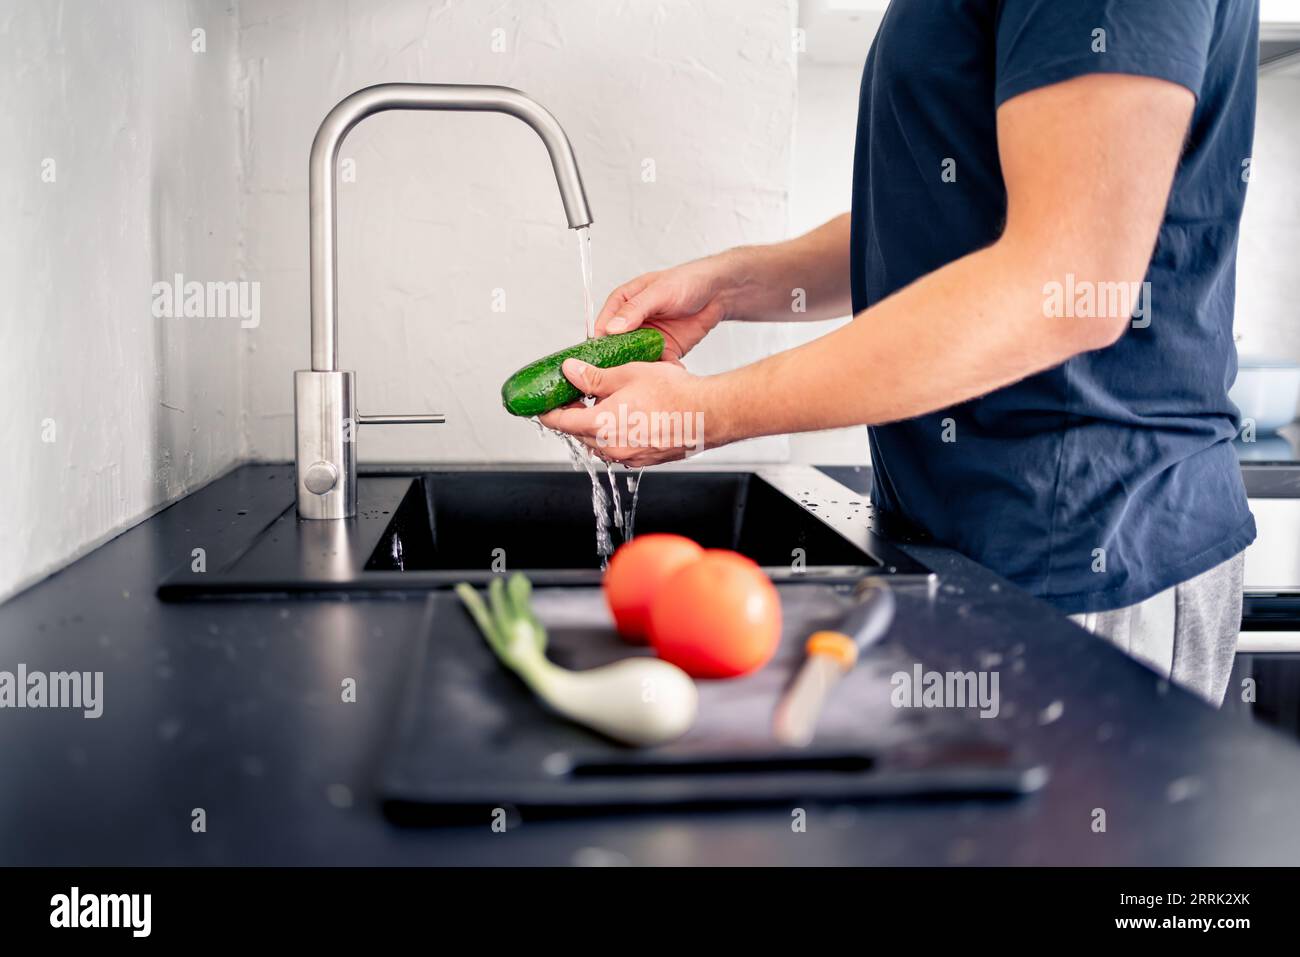 Laver les légumes dans l'évier de cuisine avec de l'eau. Préparation d'aliments. Homme cuisinant. Faire de la salade. Concombre à la main sous le robinet. Végétalien ou végétarien. Banque D'Images